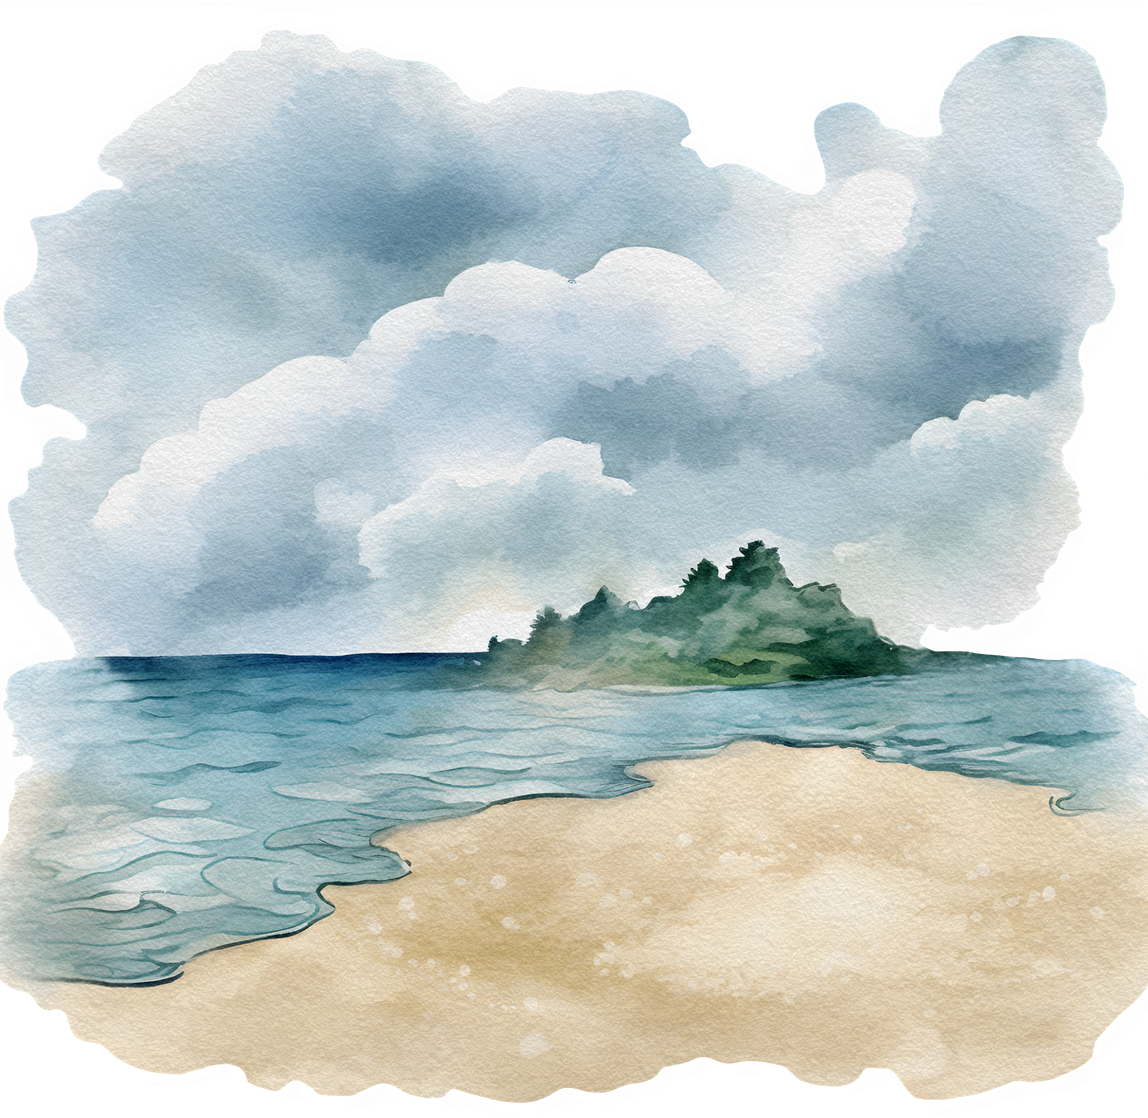 Watercolor beach ladscape illustration. Seascape